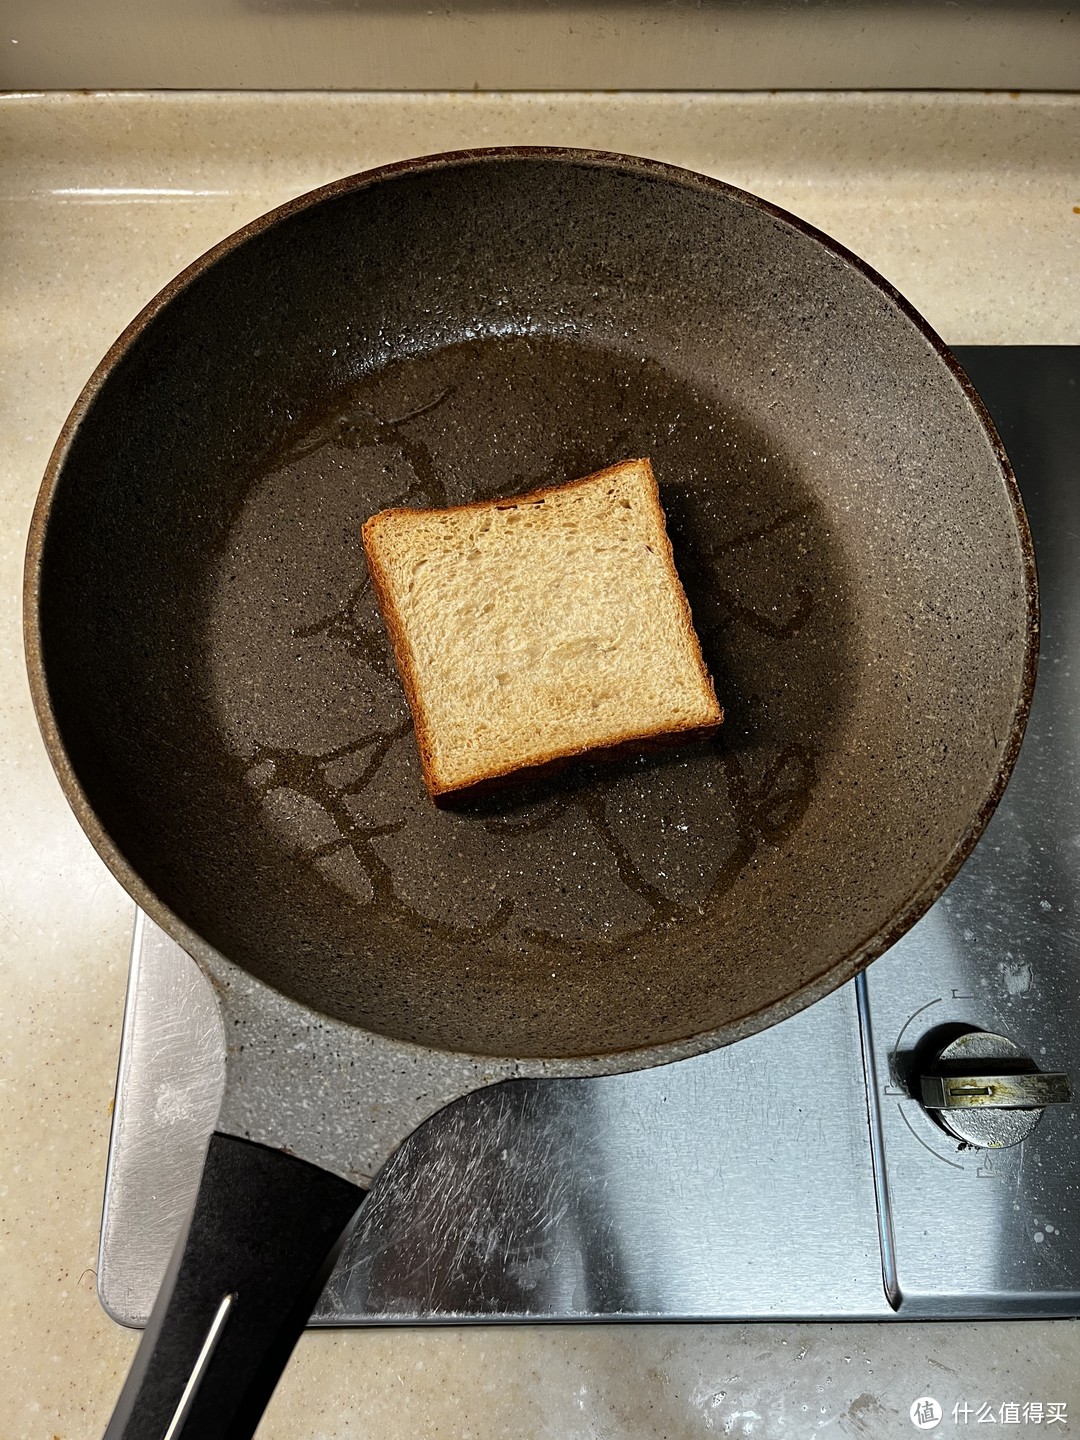 在平底锅里给一点点油和一点点盐，煎一下面包，会非常非常的好吃